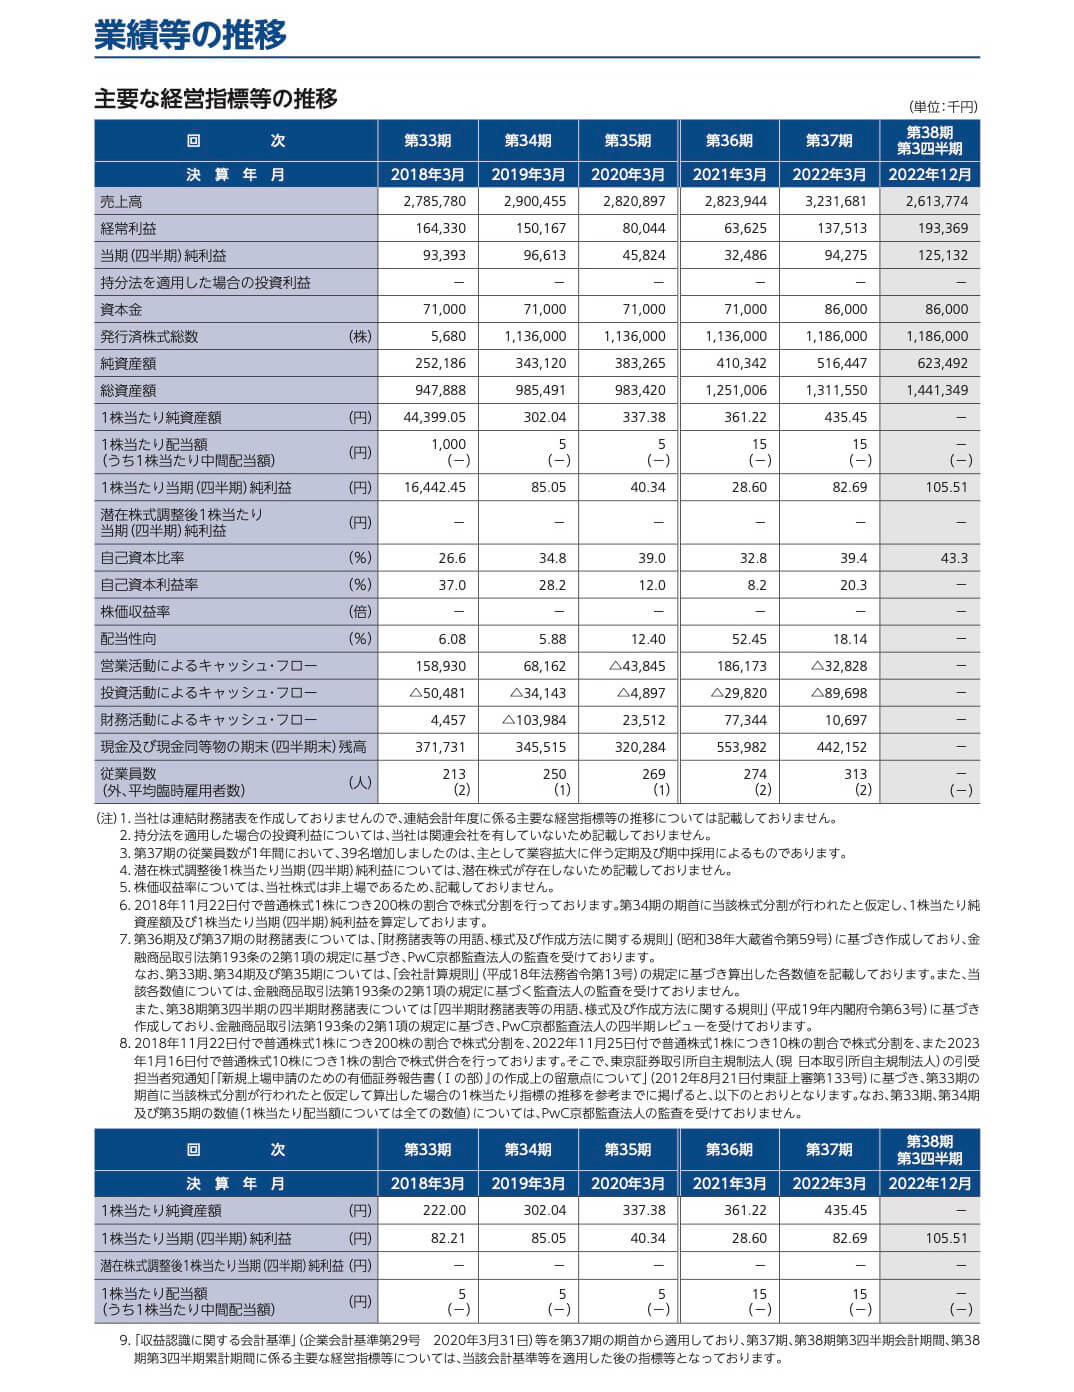 日本ナレッジ(5252)の経営指標等の推移